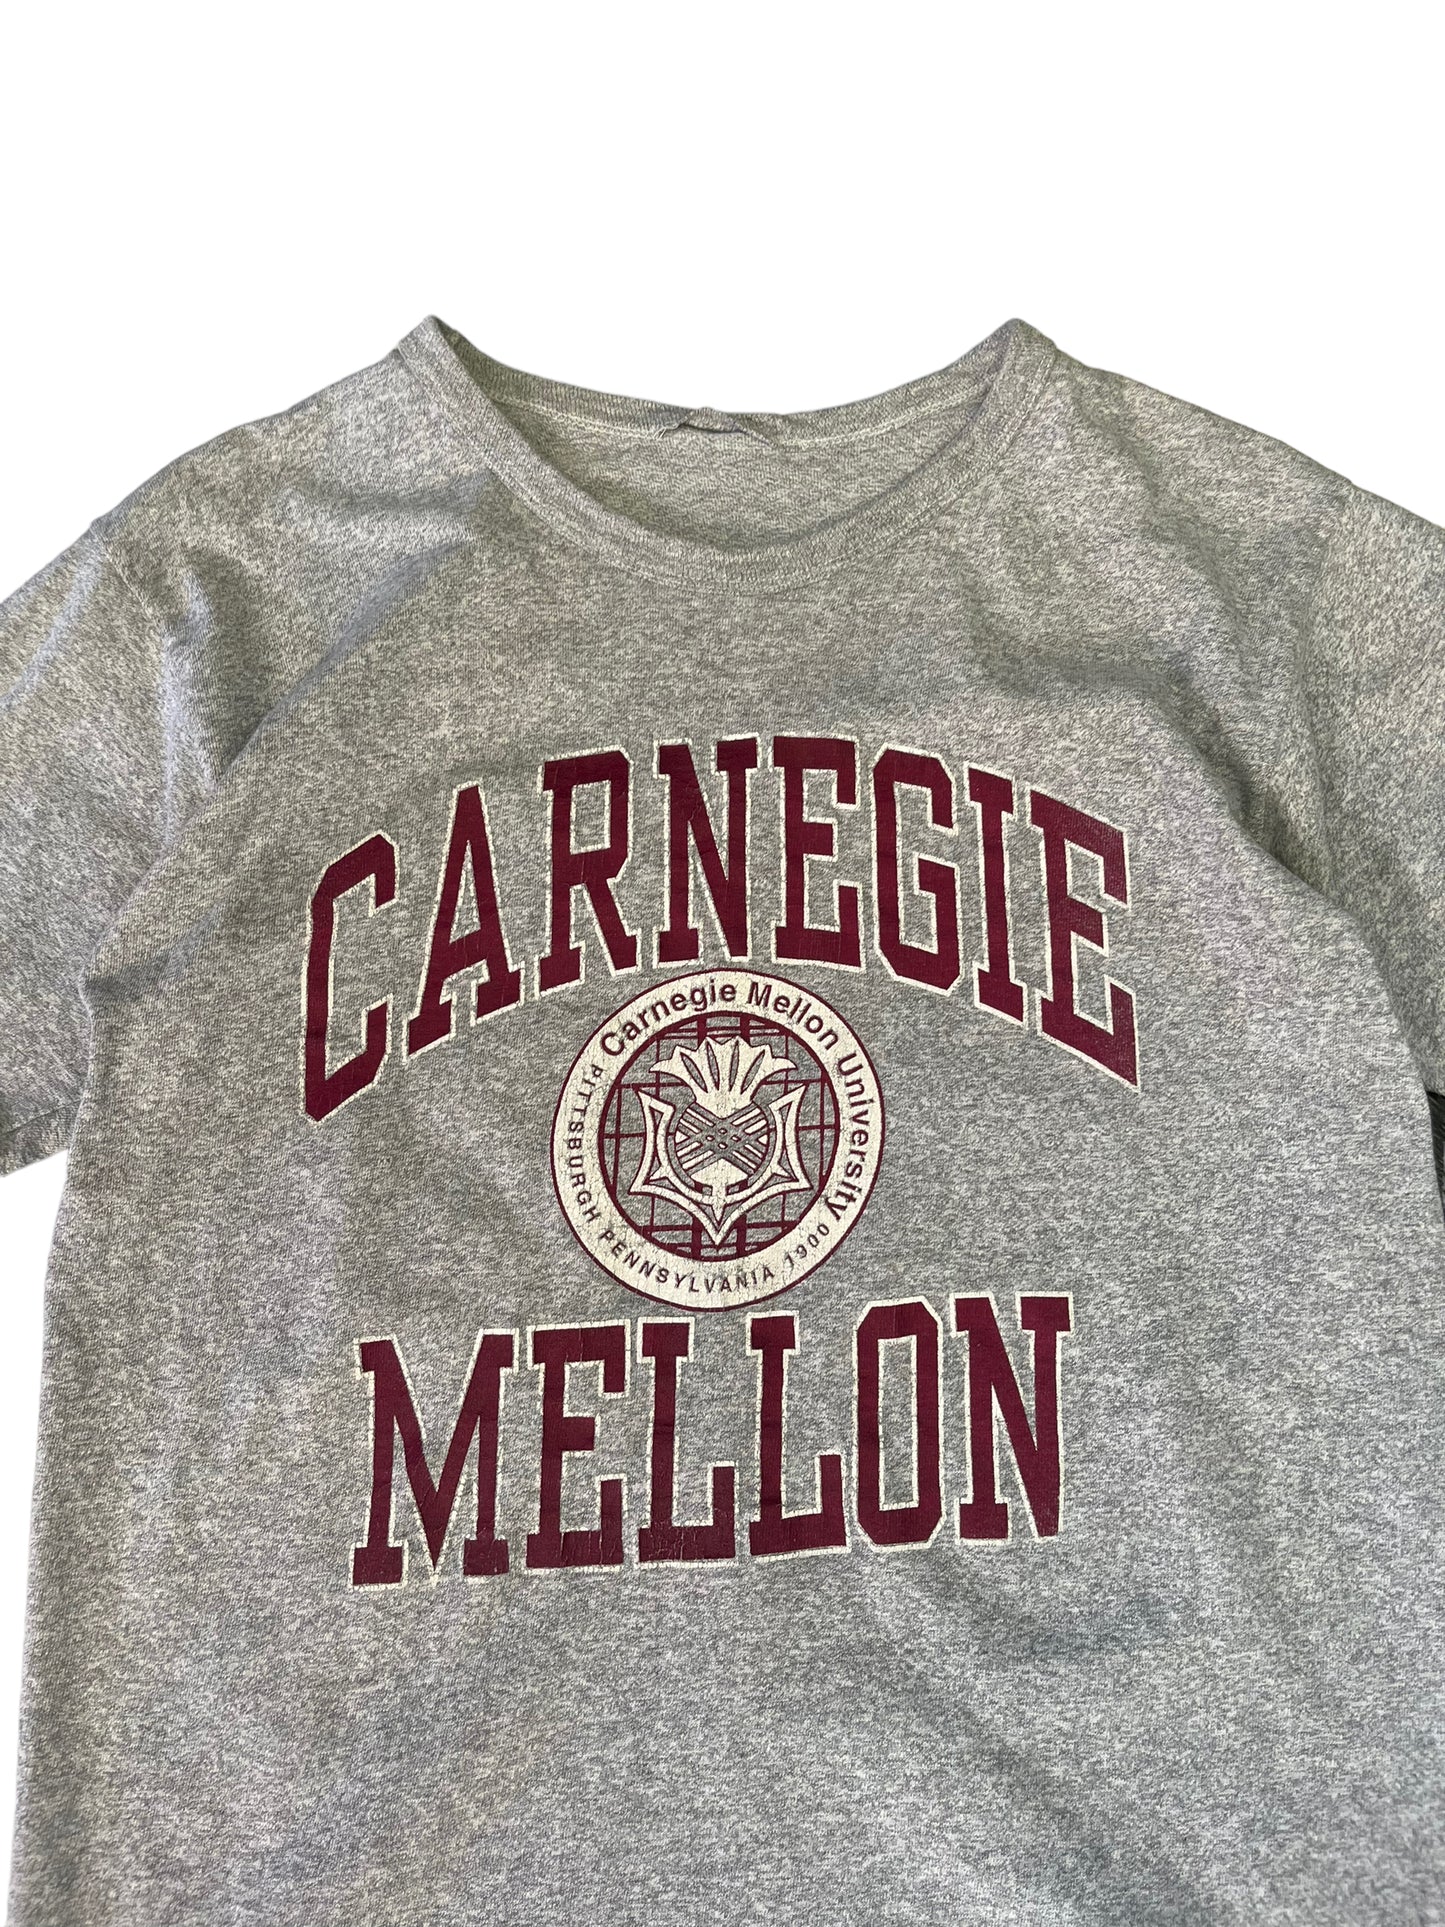 (M) Vintage Carnegie Mellon Tee